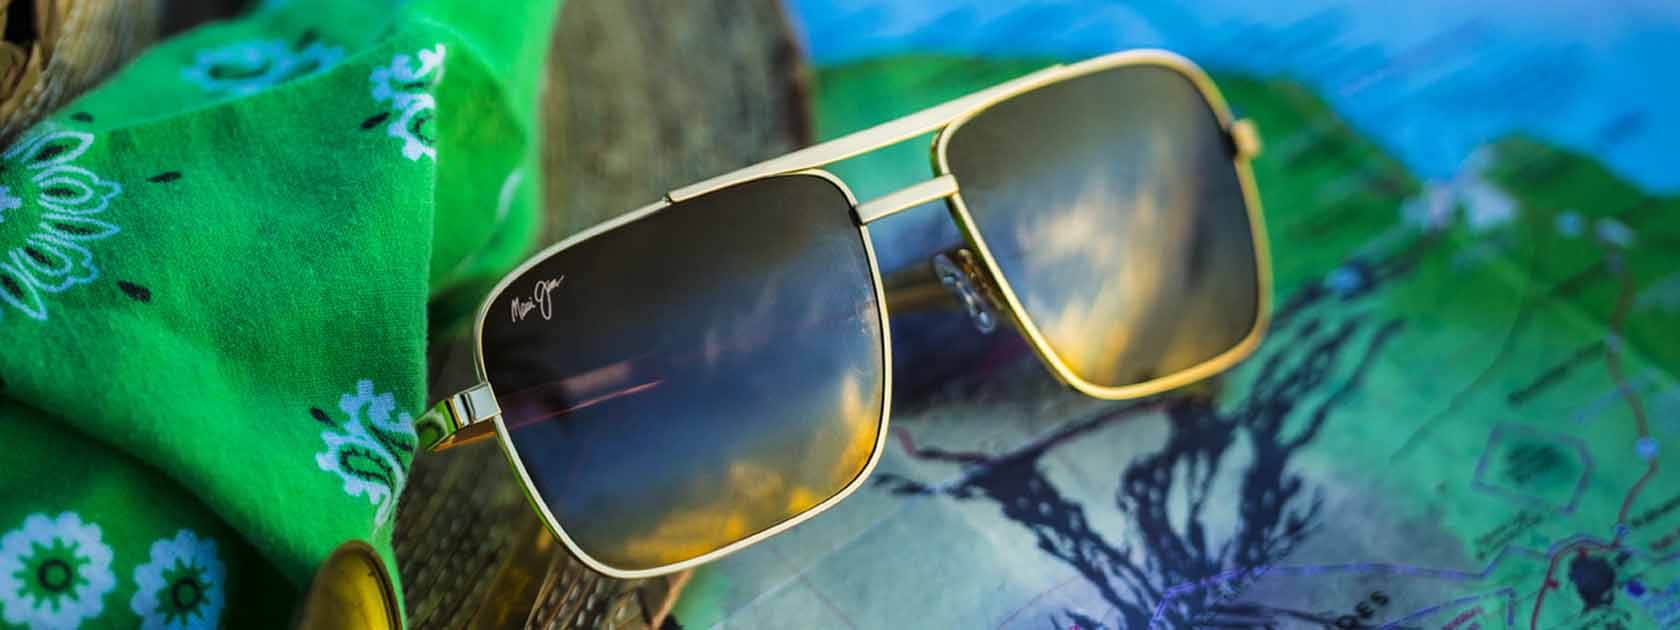 lunettes de soleil aviateur à monture dorée avec verres bronze présentées sur mouchoir vert